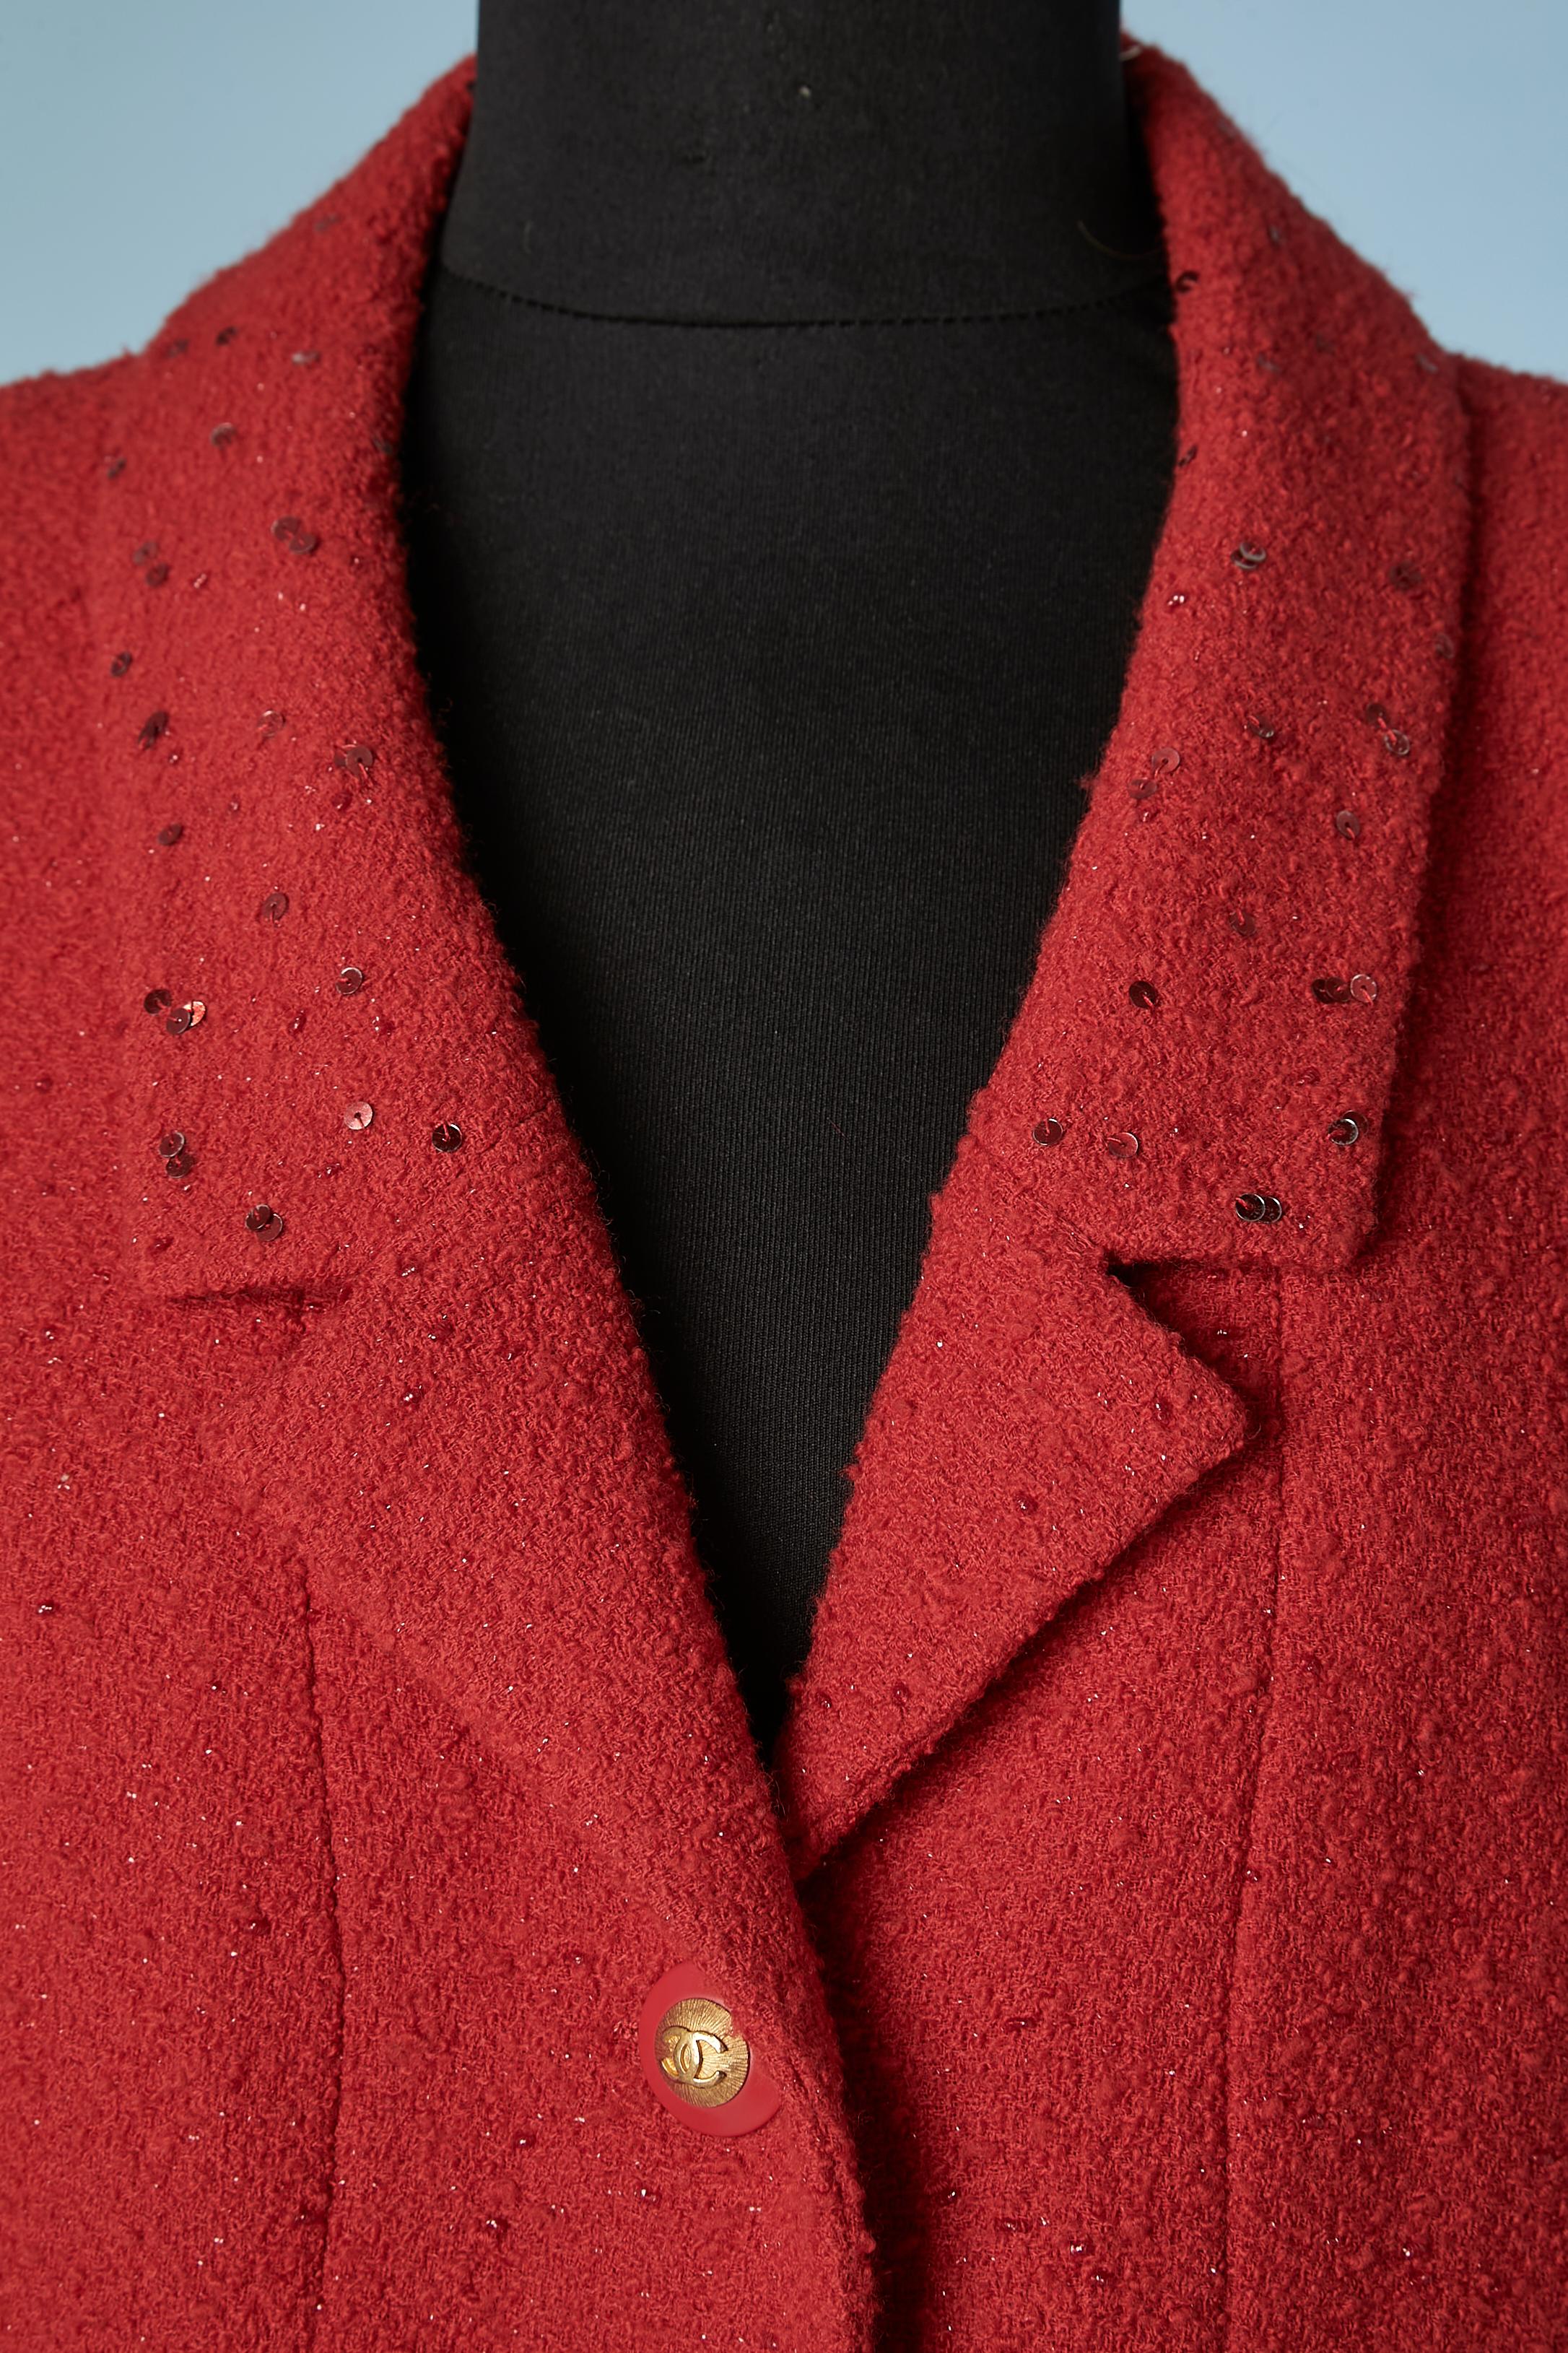 Veste croisée en tweed rouge, doublée de paillettes rouges et de soie. Boutons de la marque. Des pads d'épaule. Chaîne à l'intérieur de la jaquette sur le bord inférieur. 
TAILLE L 